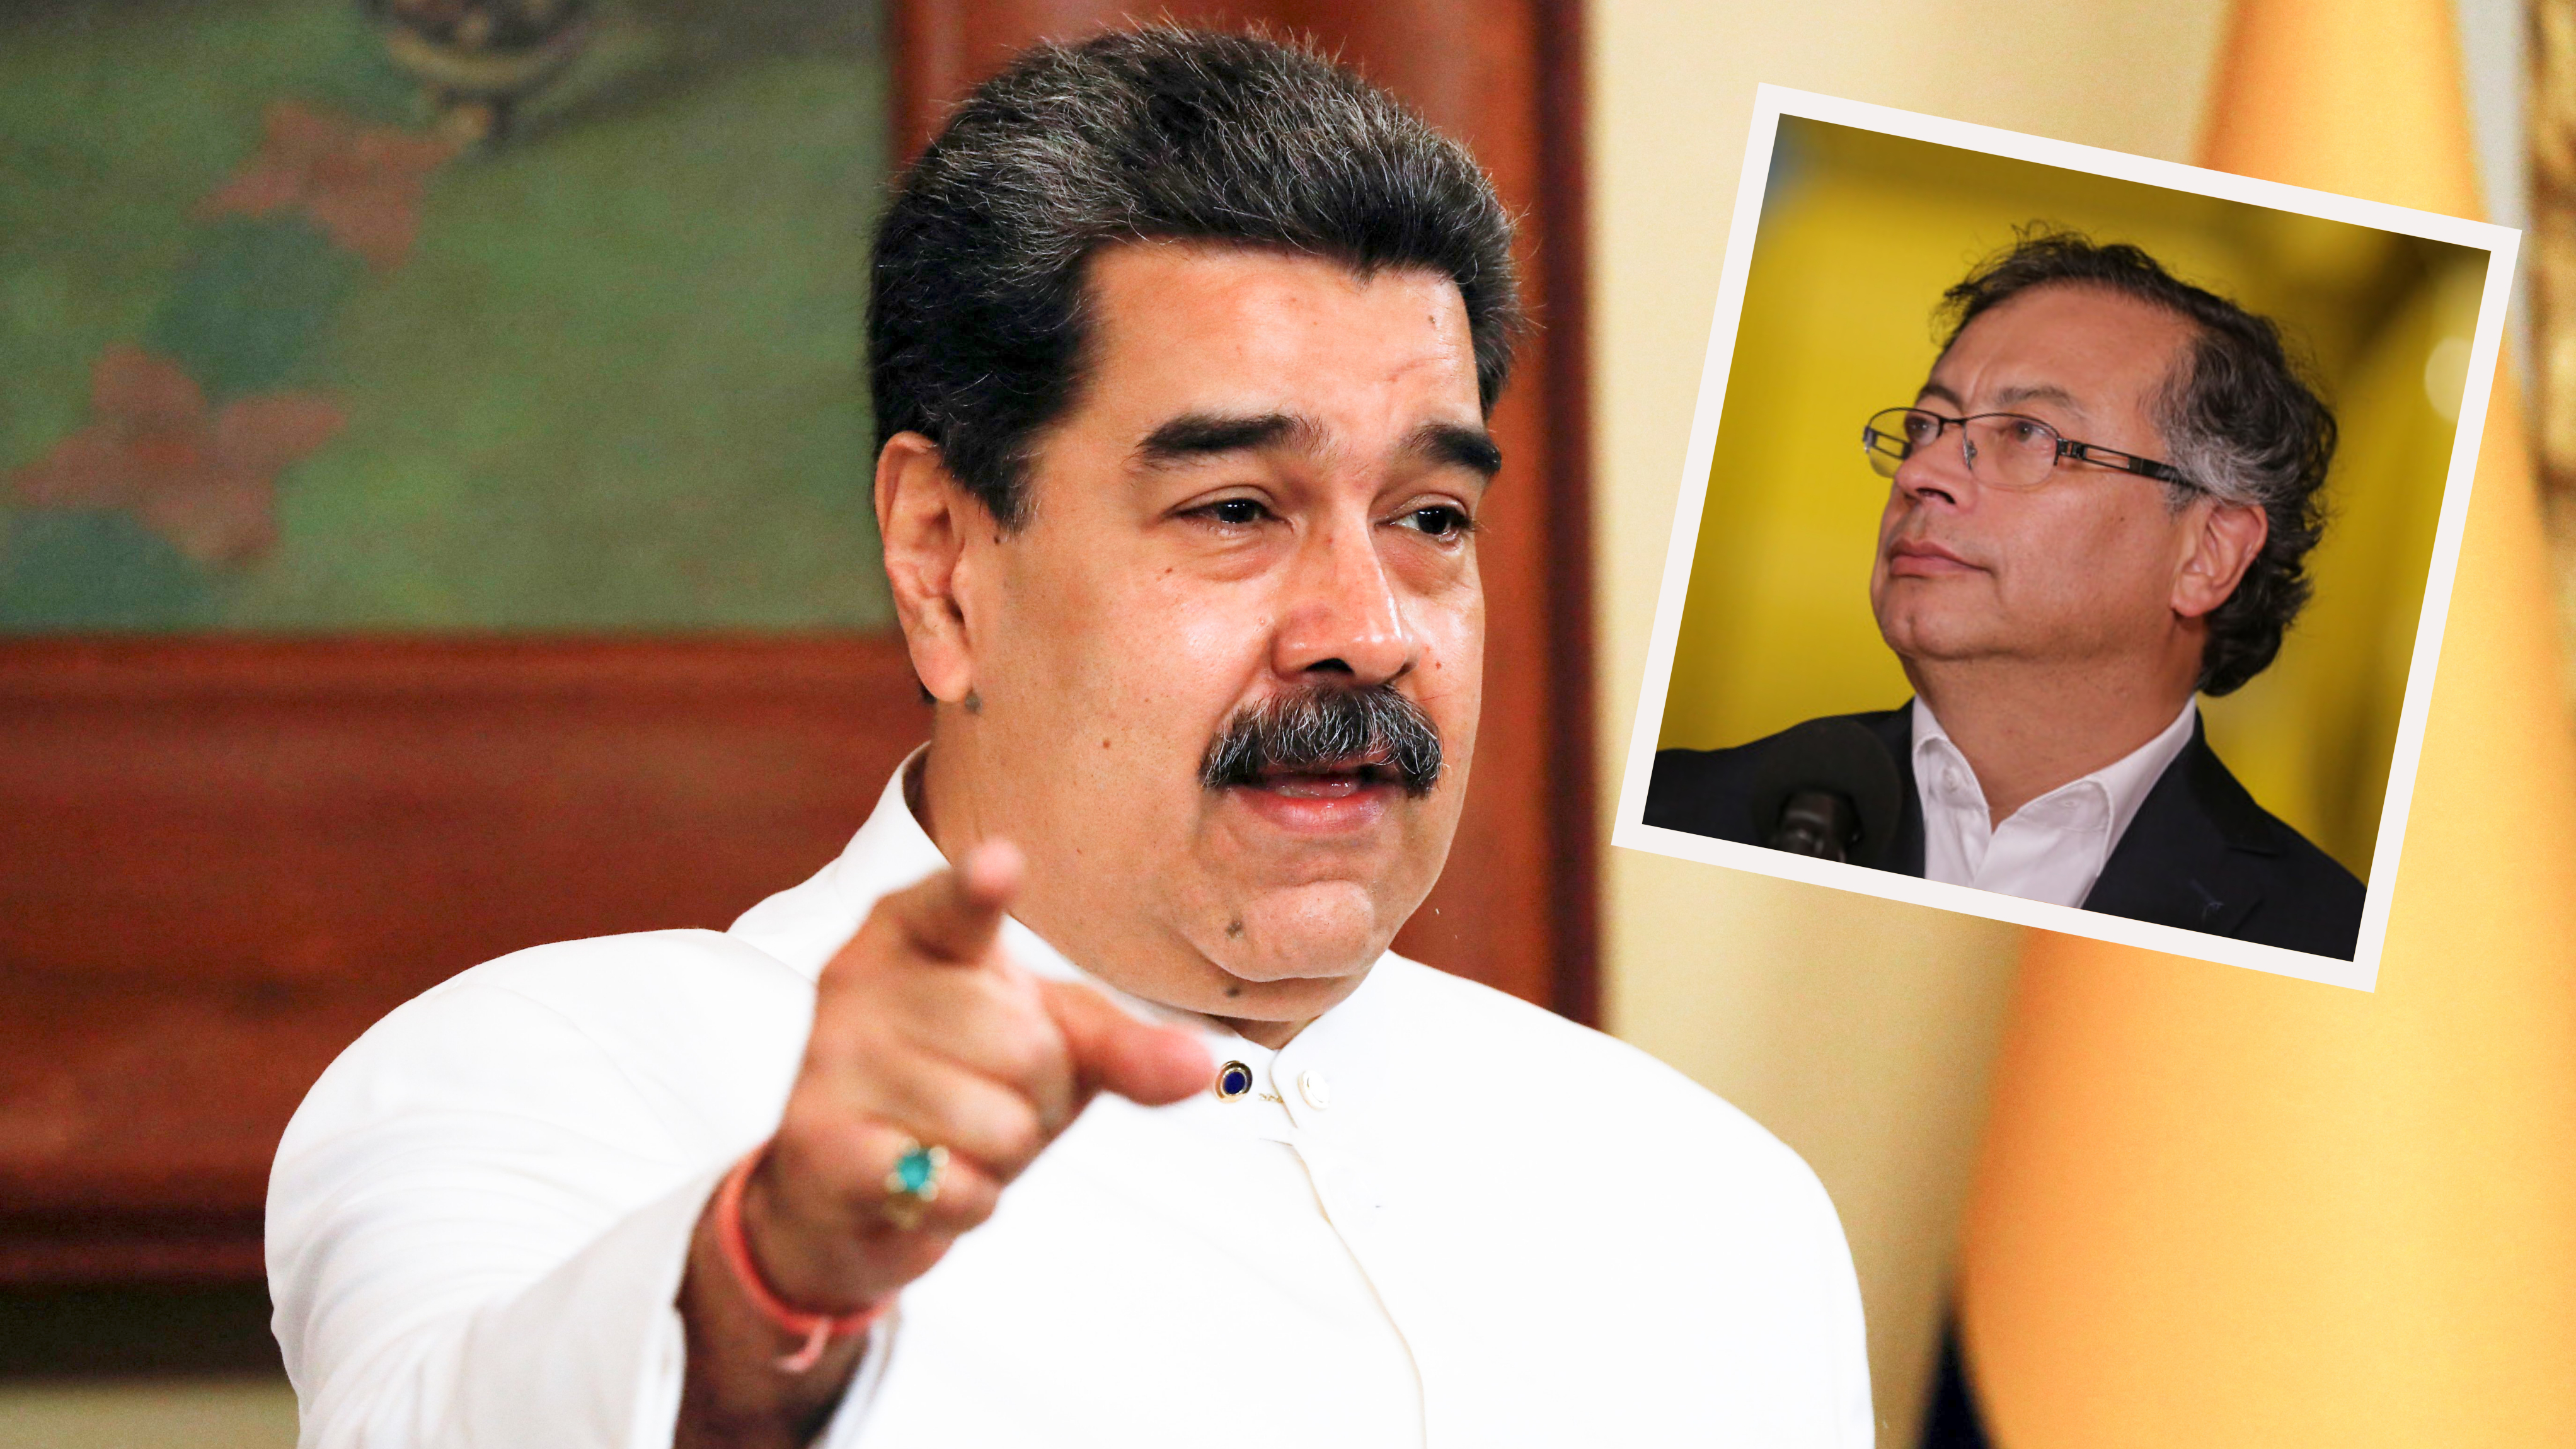 El dictador venezolano Nicolás Maduro celebró la disposición del presidente colombiano Gustavo Petro de restablecer diálogos y reabrir las fronteras. Fotos: Reuters y Colprensa.